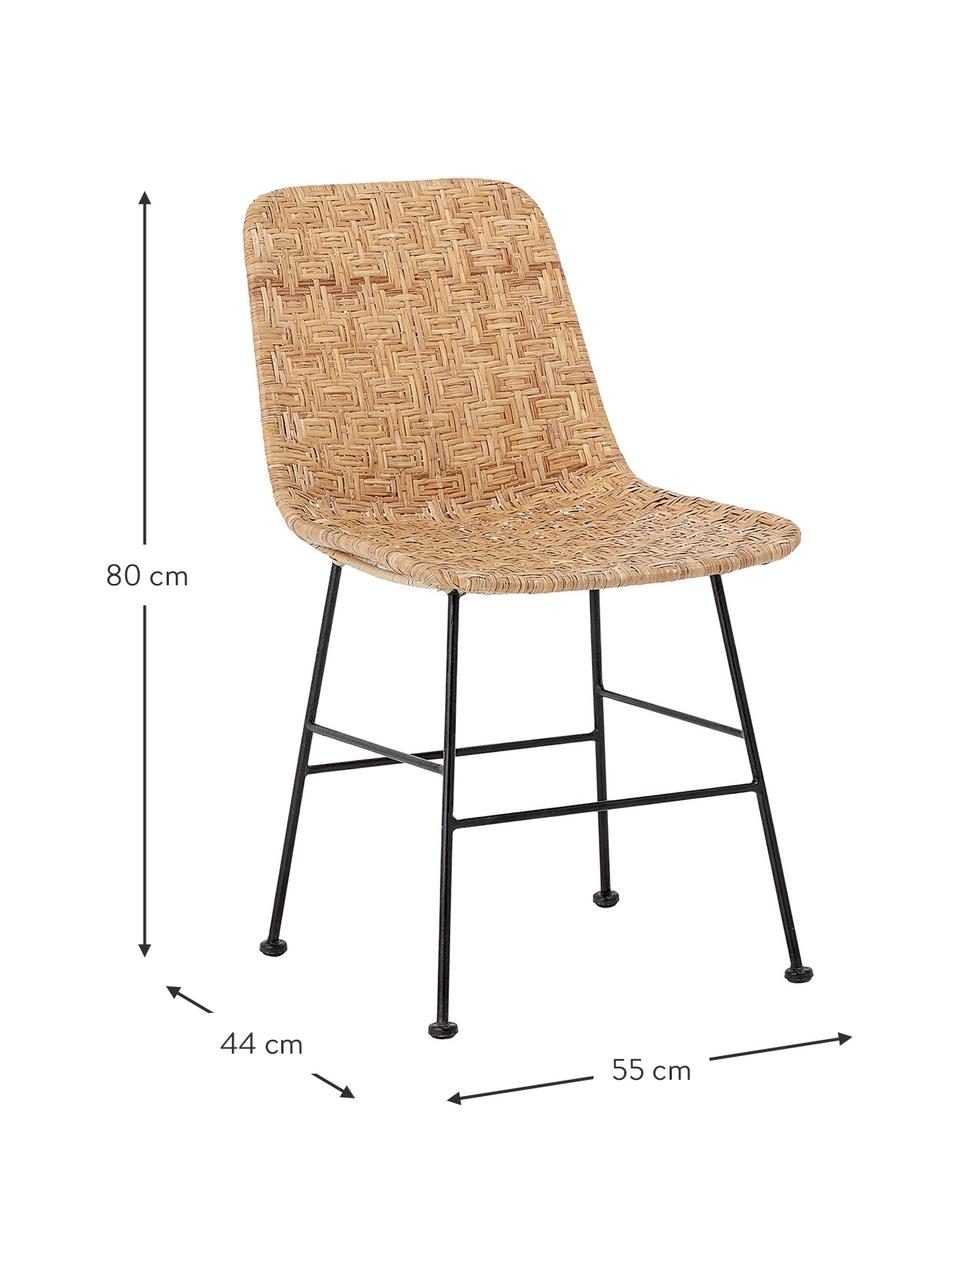 Rattan-Stuhl Kitty in Beige, Sitzfläche: Rattan, Beine: Metall, beschichtet, Beige, B 55 x T 44 cm